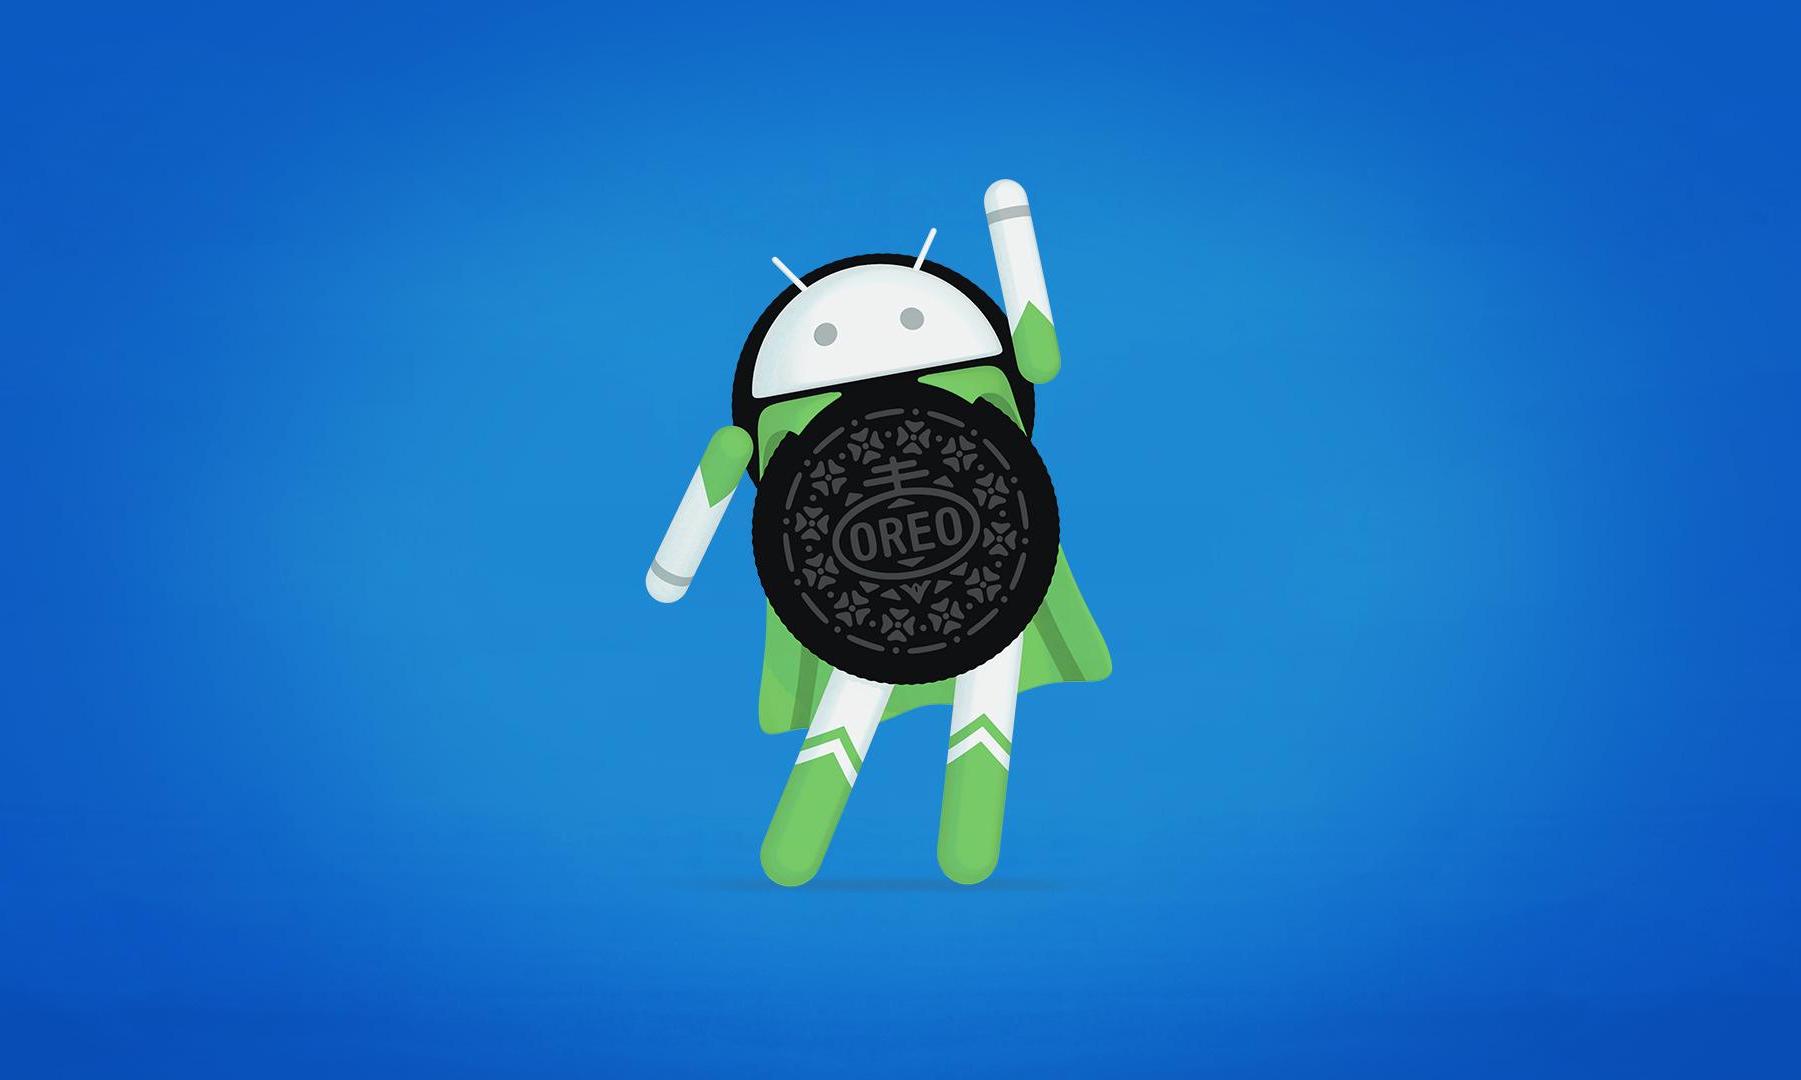 叮咚!你的手机已有一份 Android 8.0 正等待接收